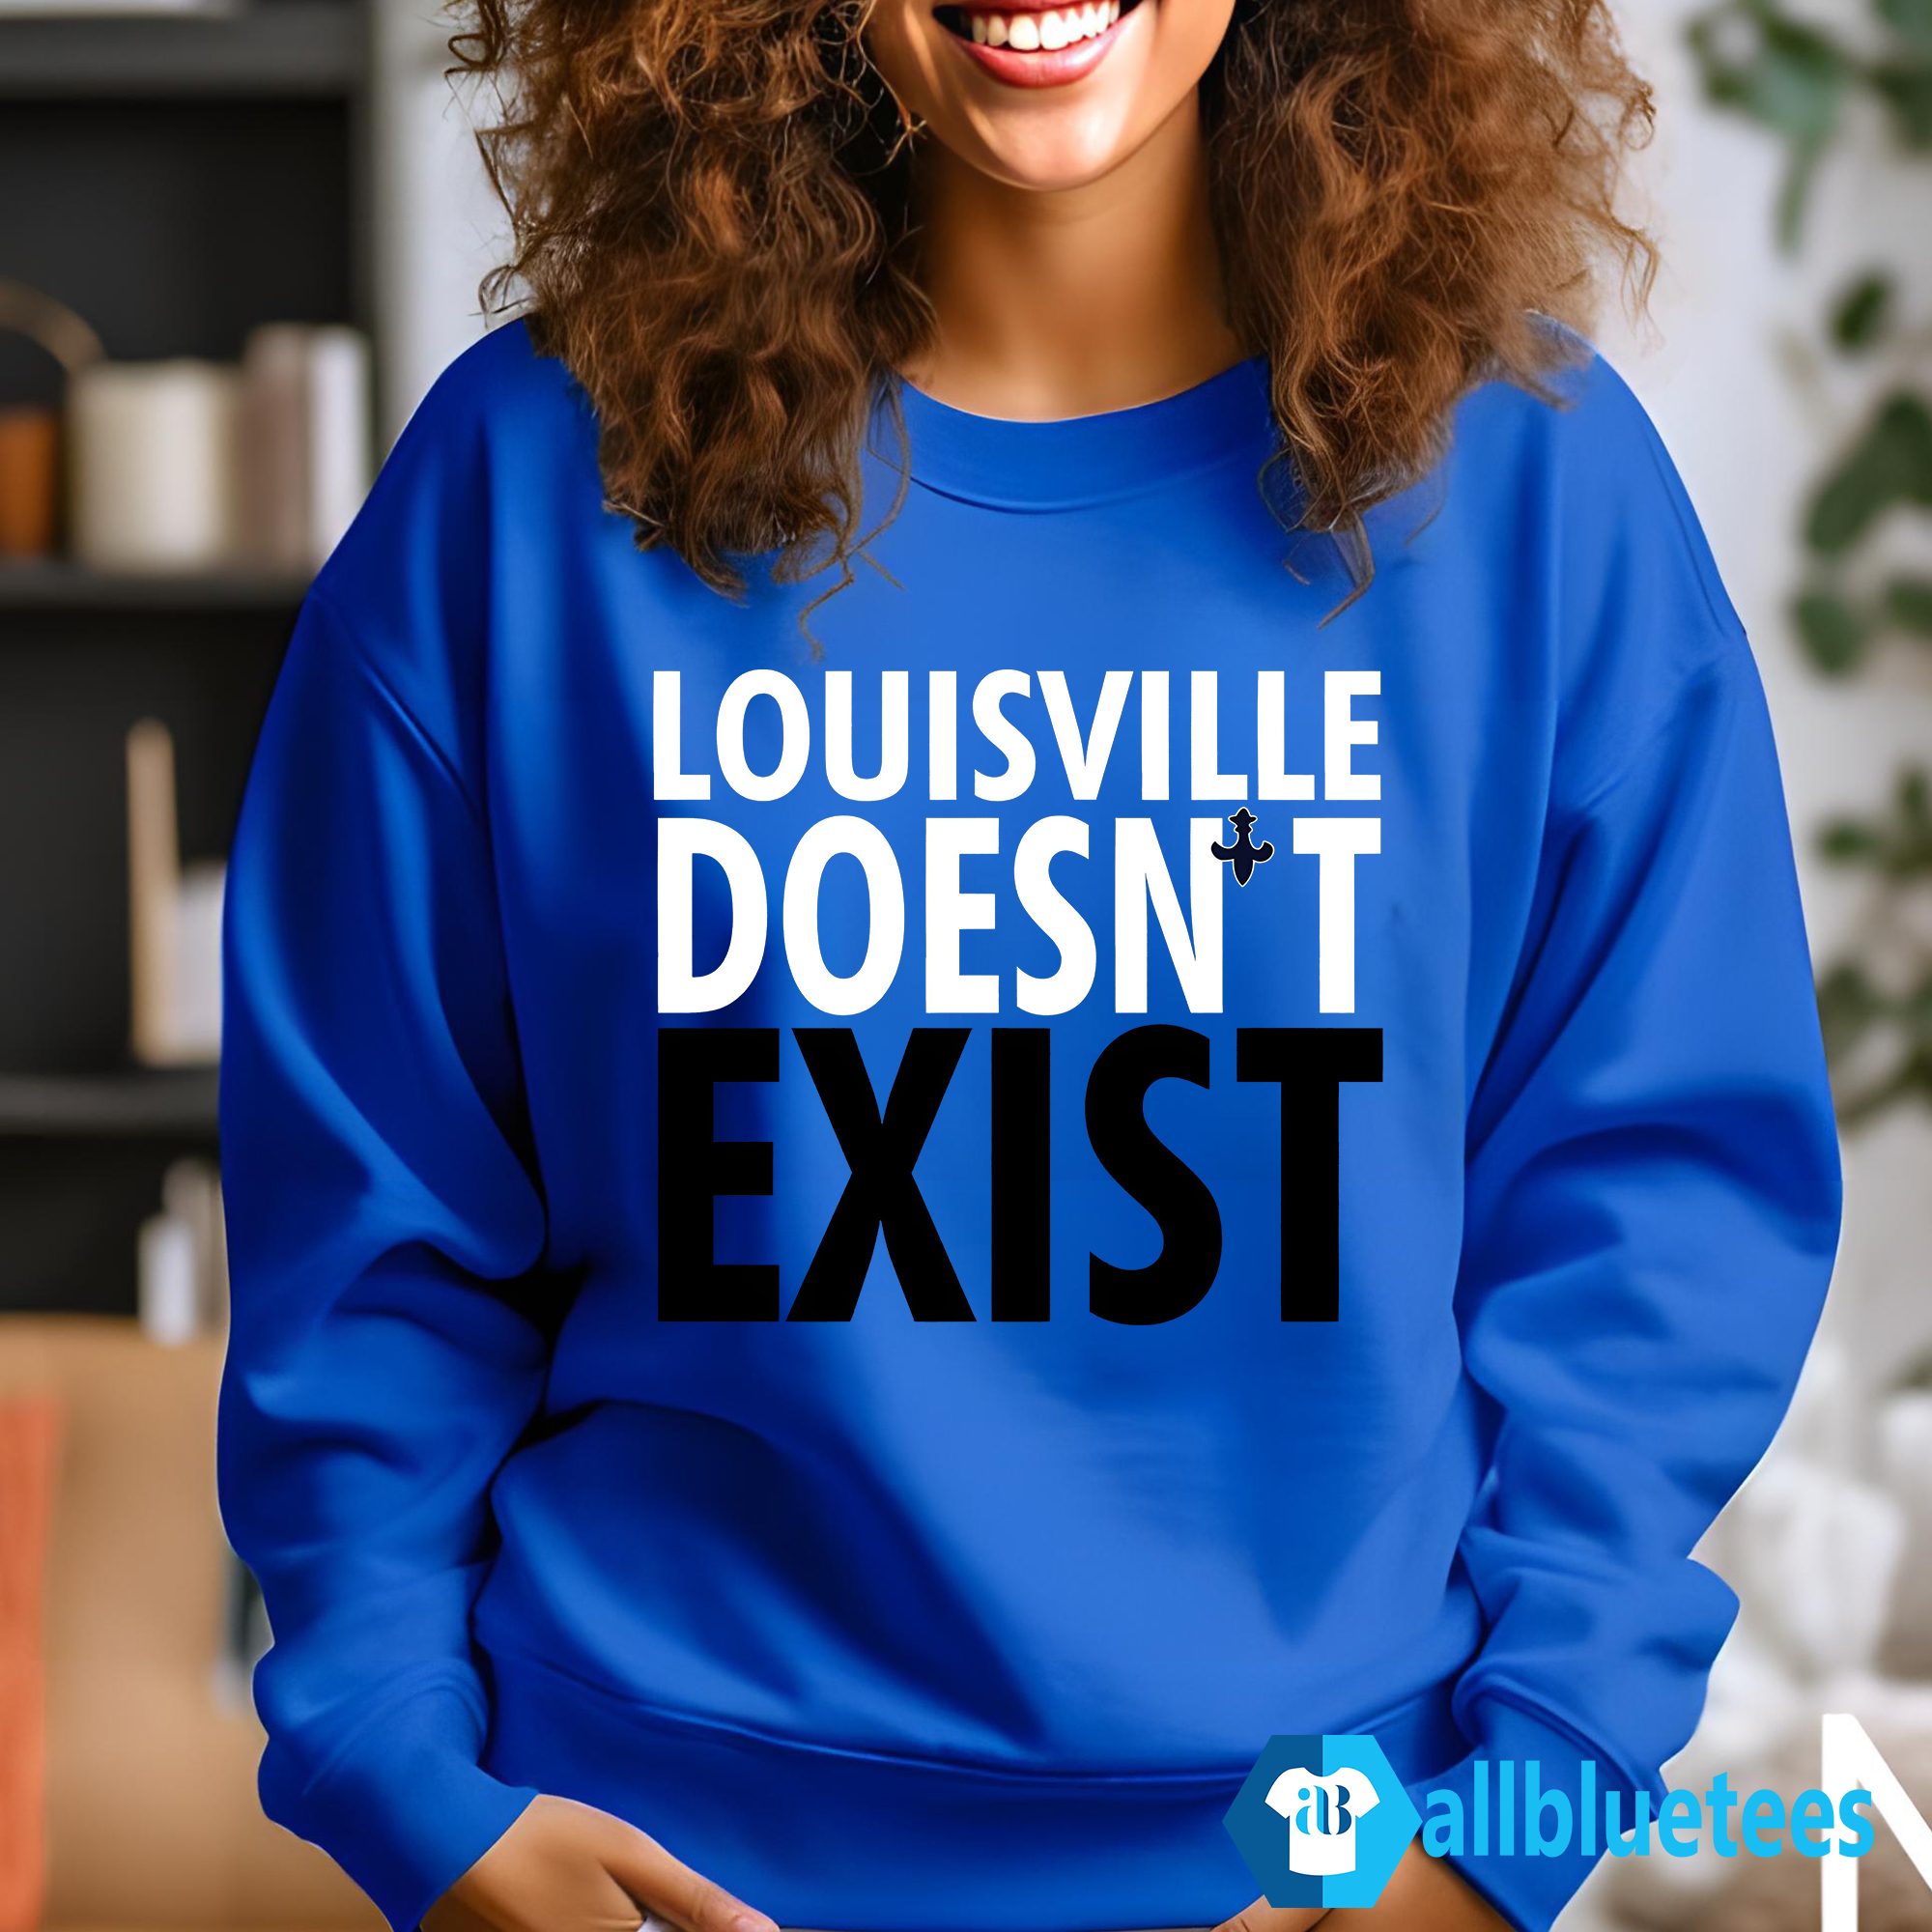 Mens Sweatshirts and Hoodies - Louisville 